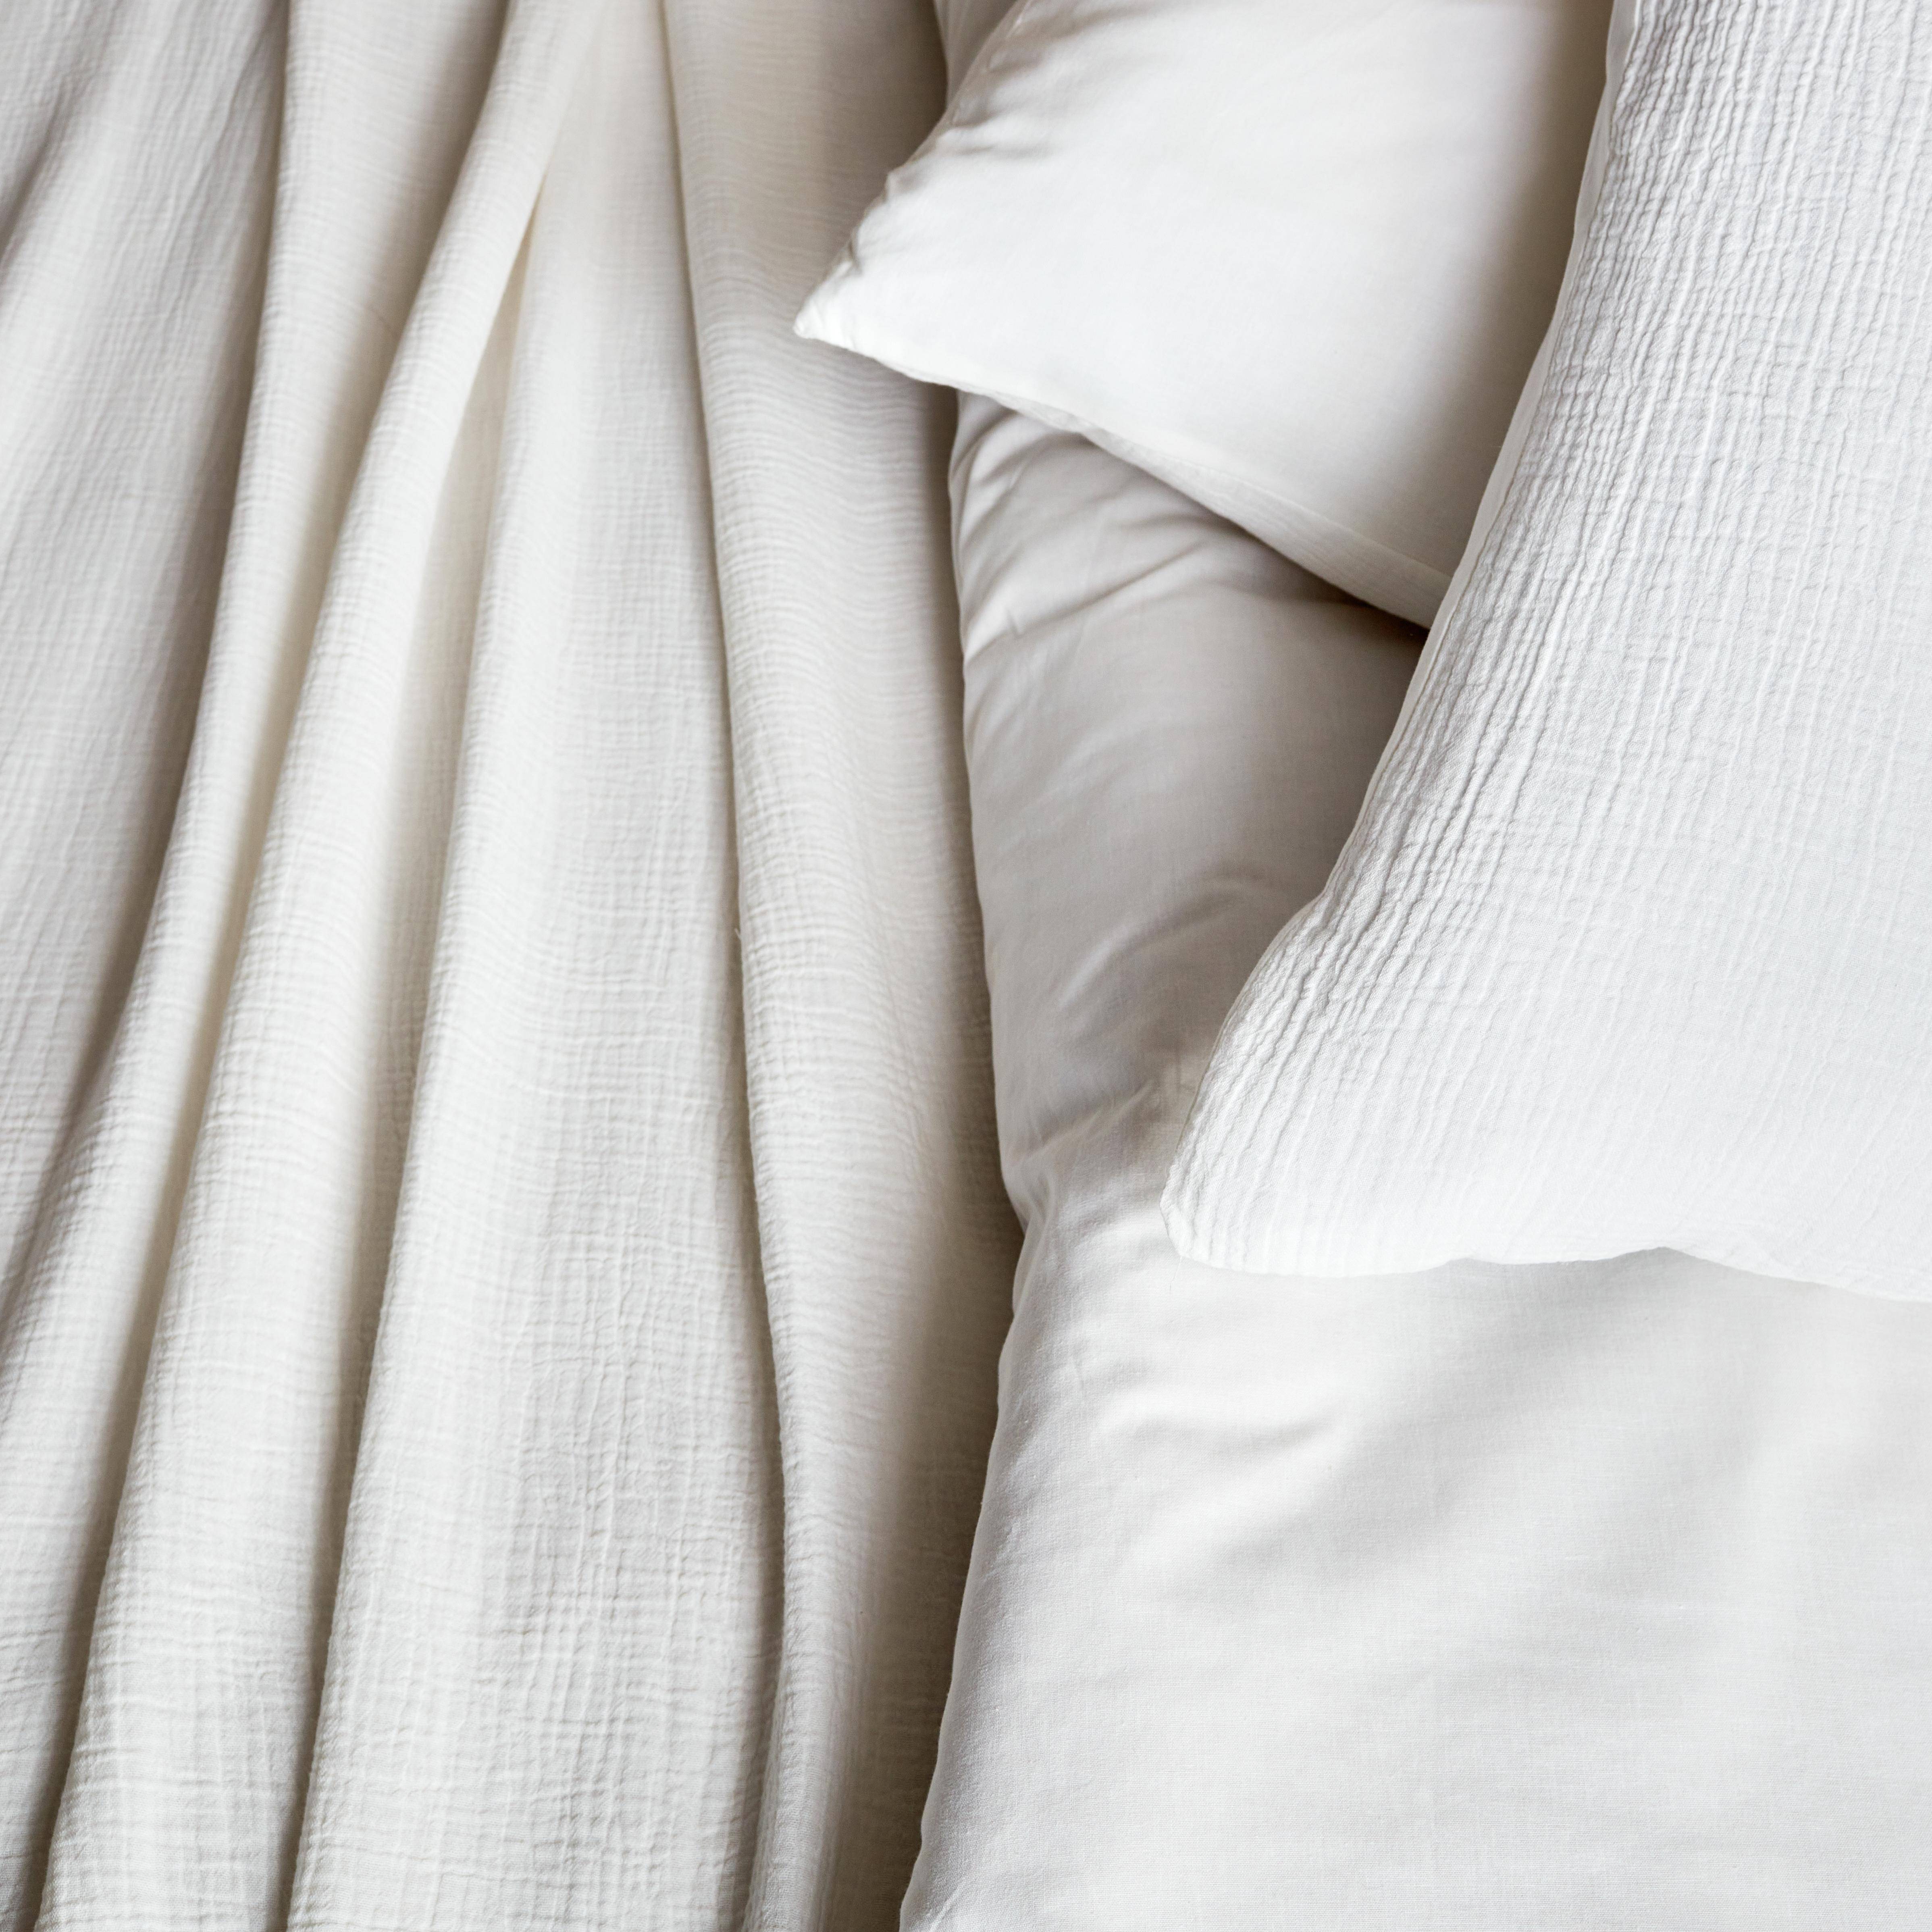 Bettwäschegarnitur aus weißer Baumwoll-Gaze / Baumwolle, 2  Personen, 1 Bettbezug mit 2 Kopfkissenbezügen 260 x 240 cm Photo2